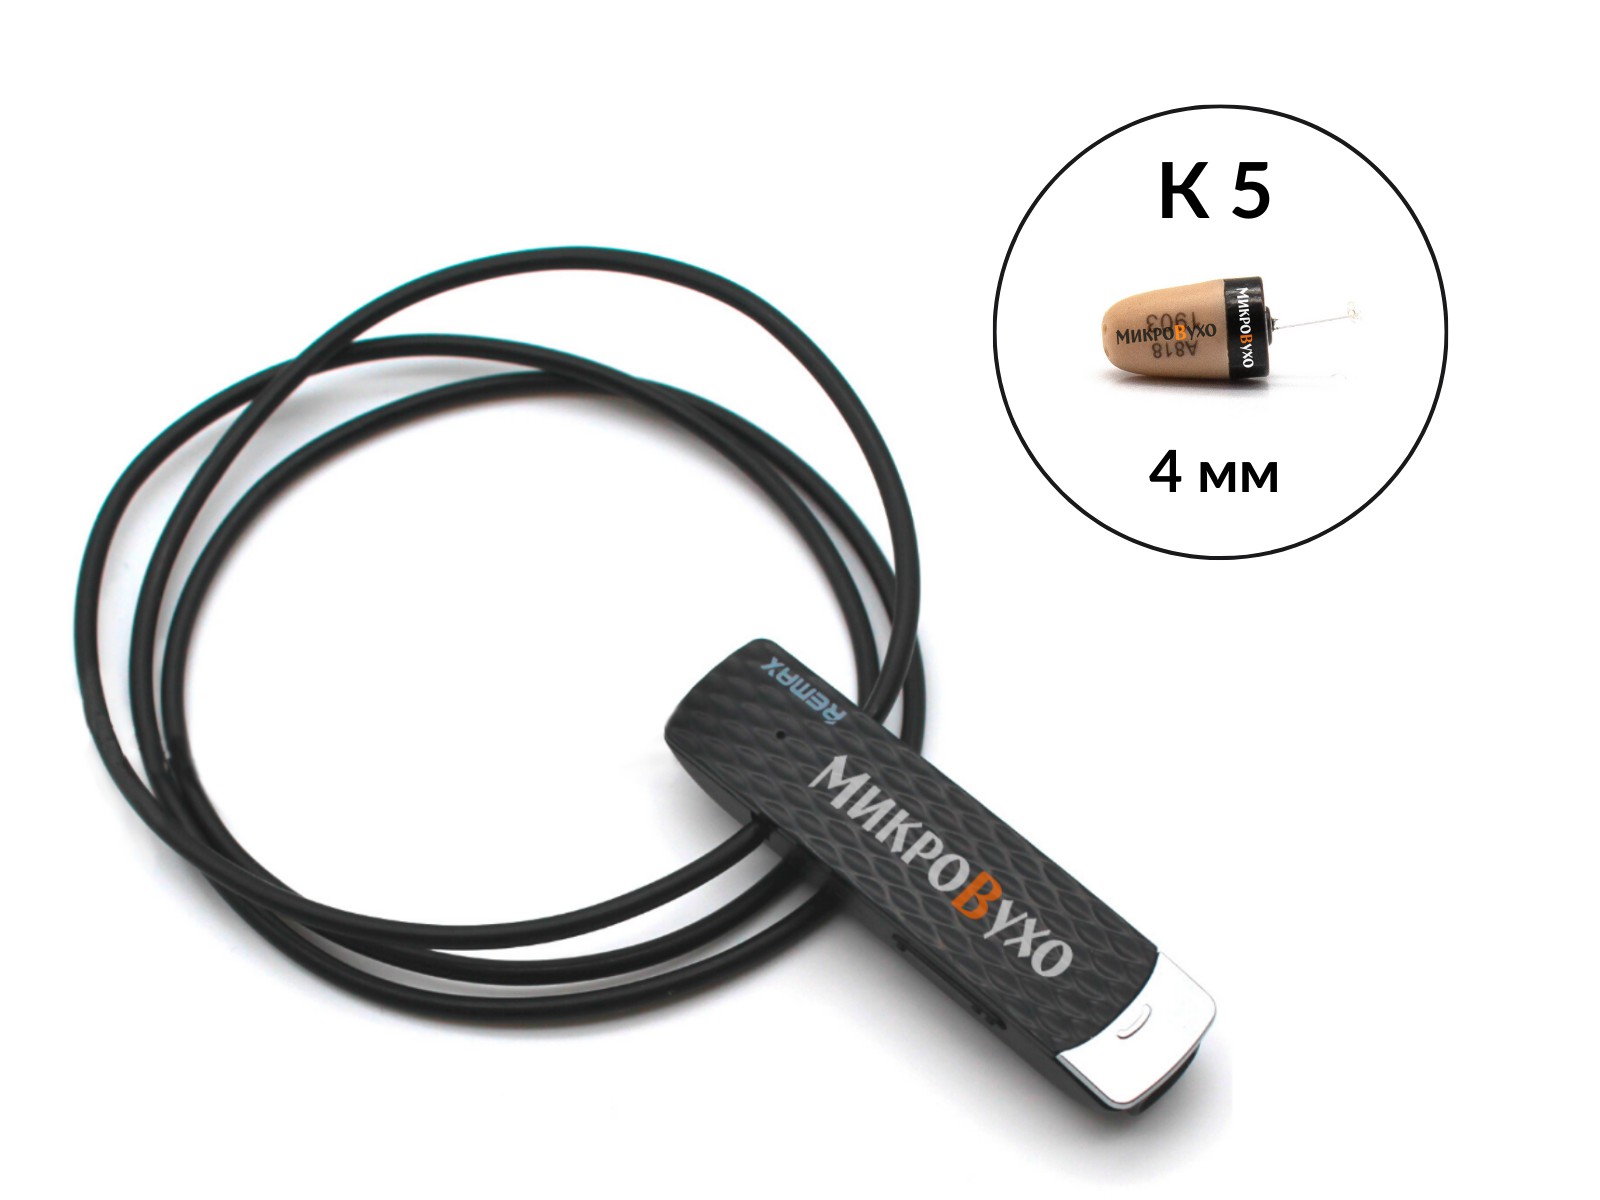 Гарнитура Bluetooth Remax с капсульным микронаушником K5 4 мм - изображение